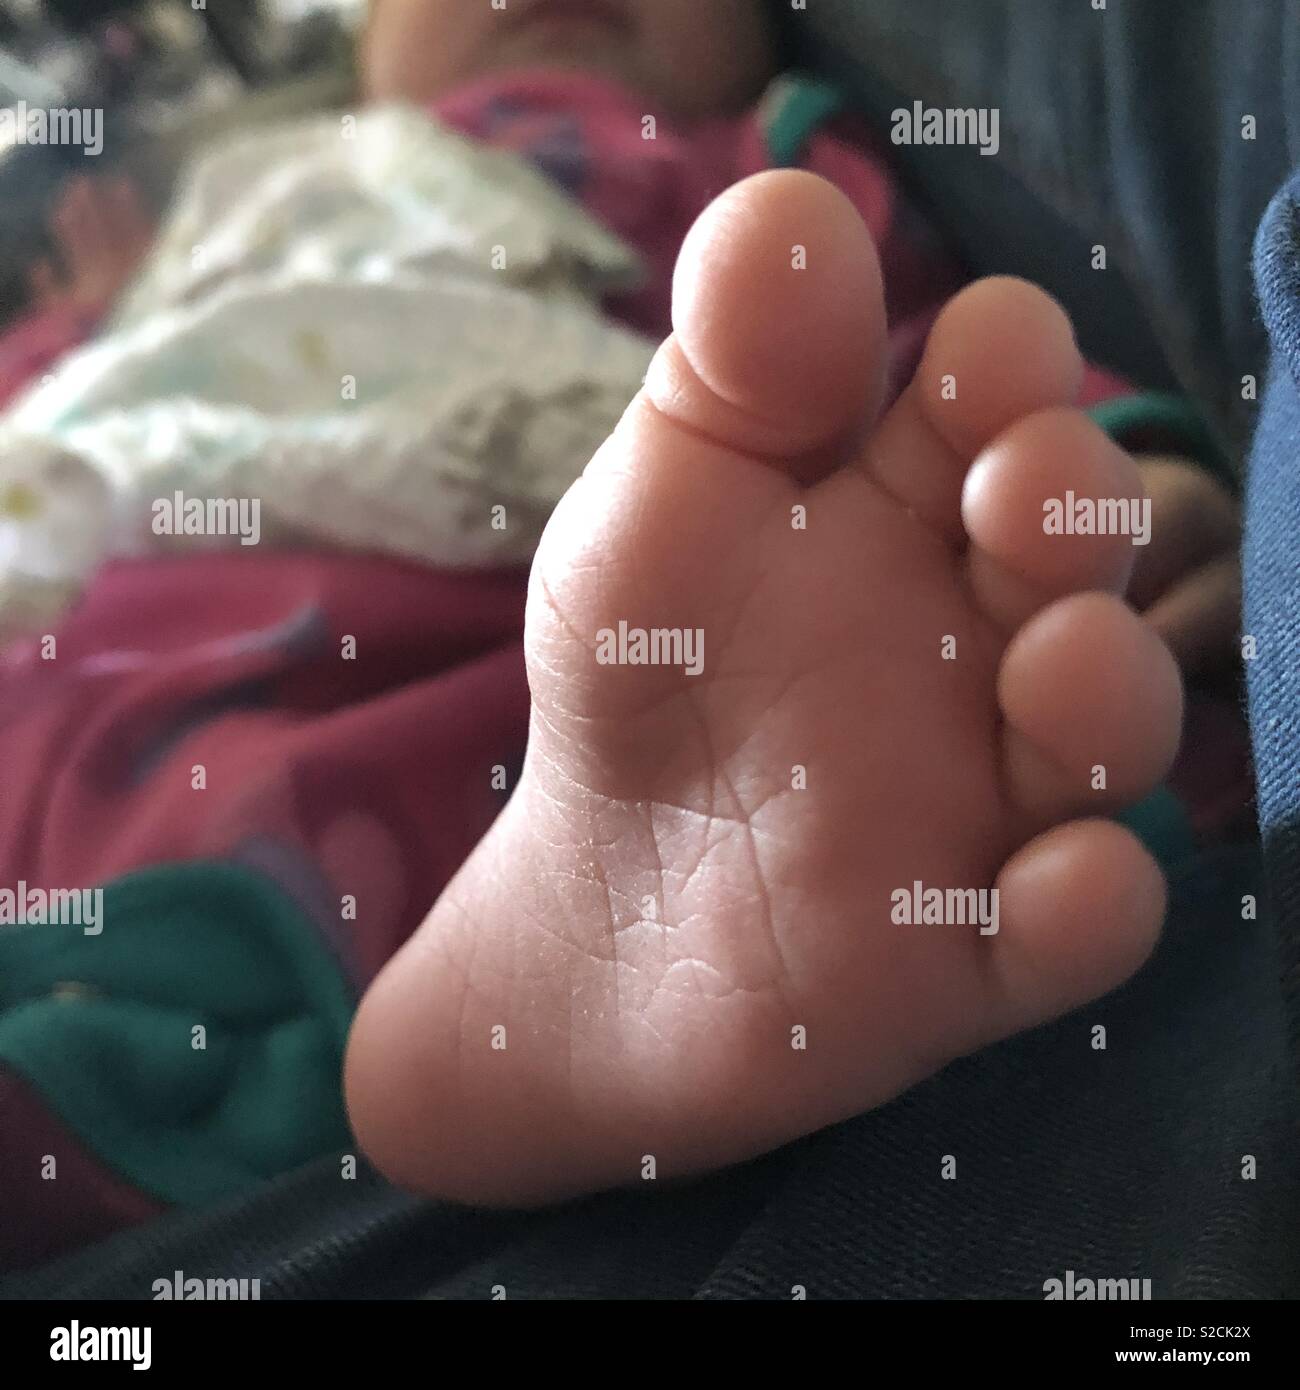 Cute toe pics